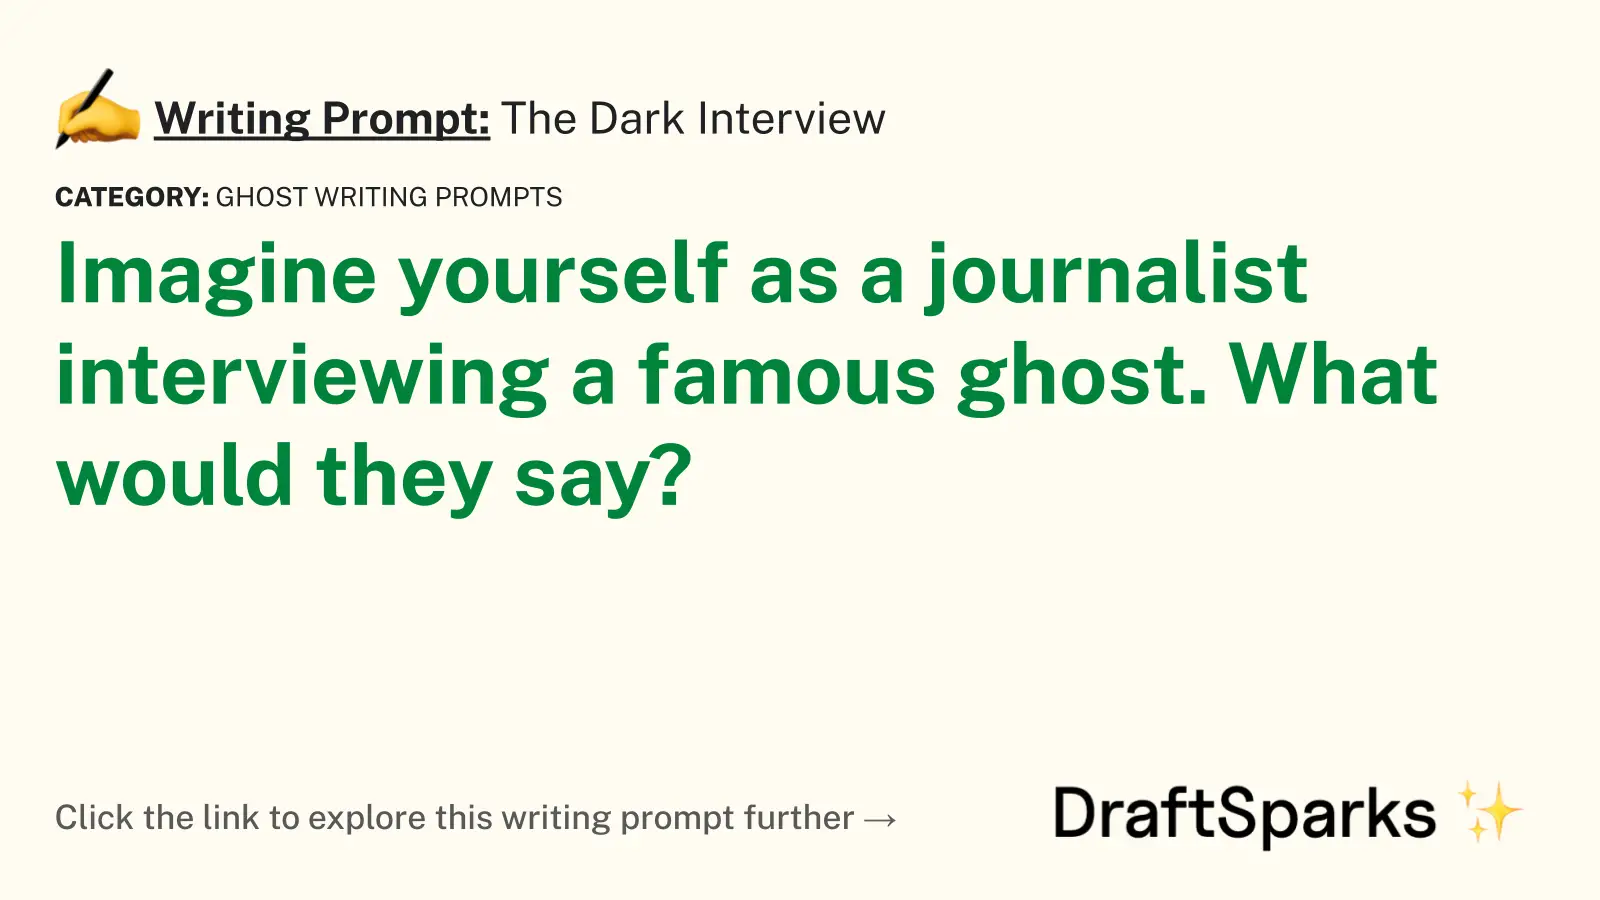 The Dark Interview